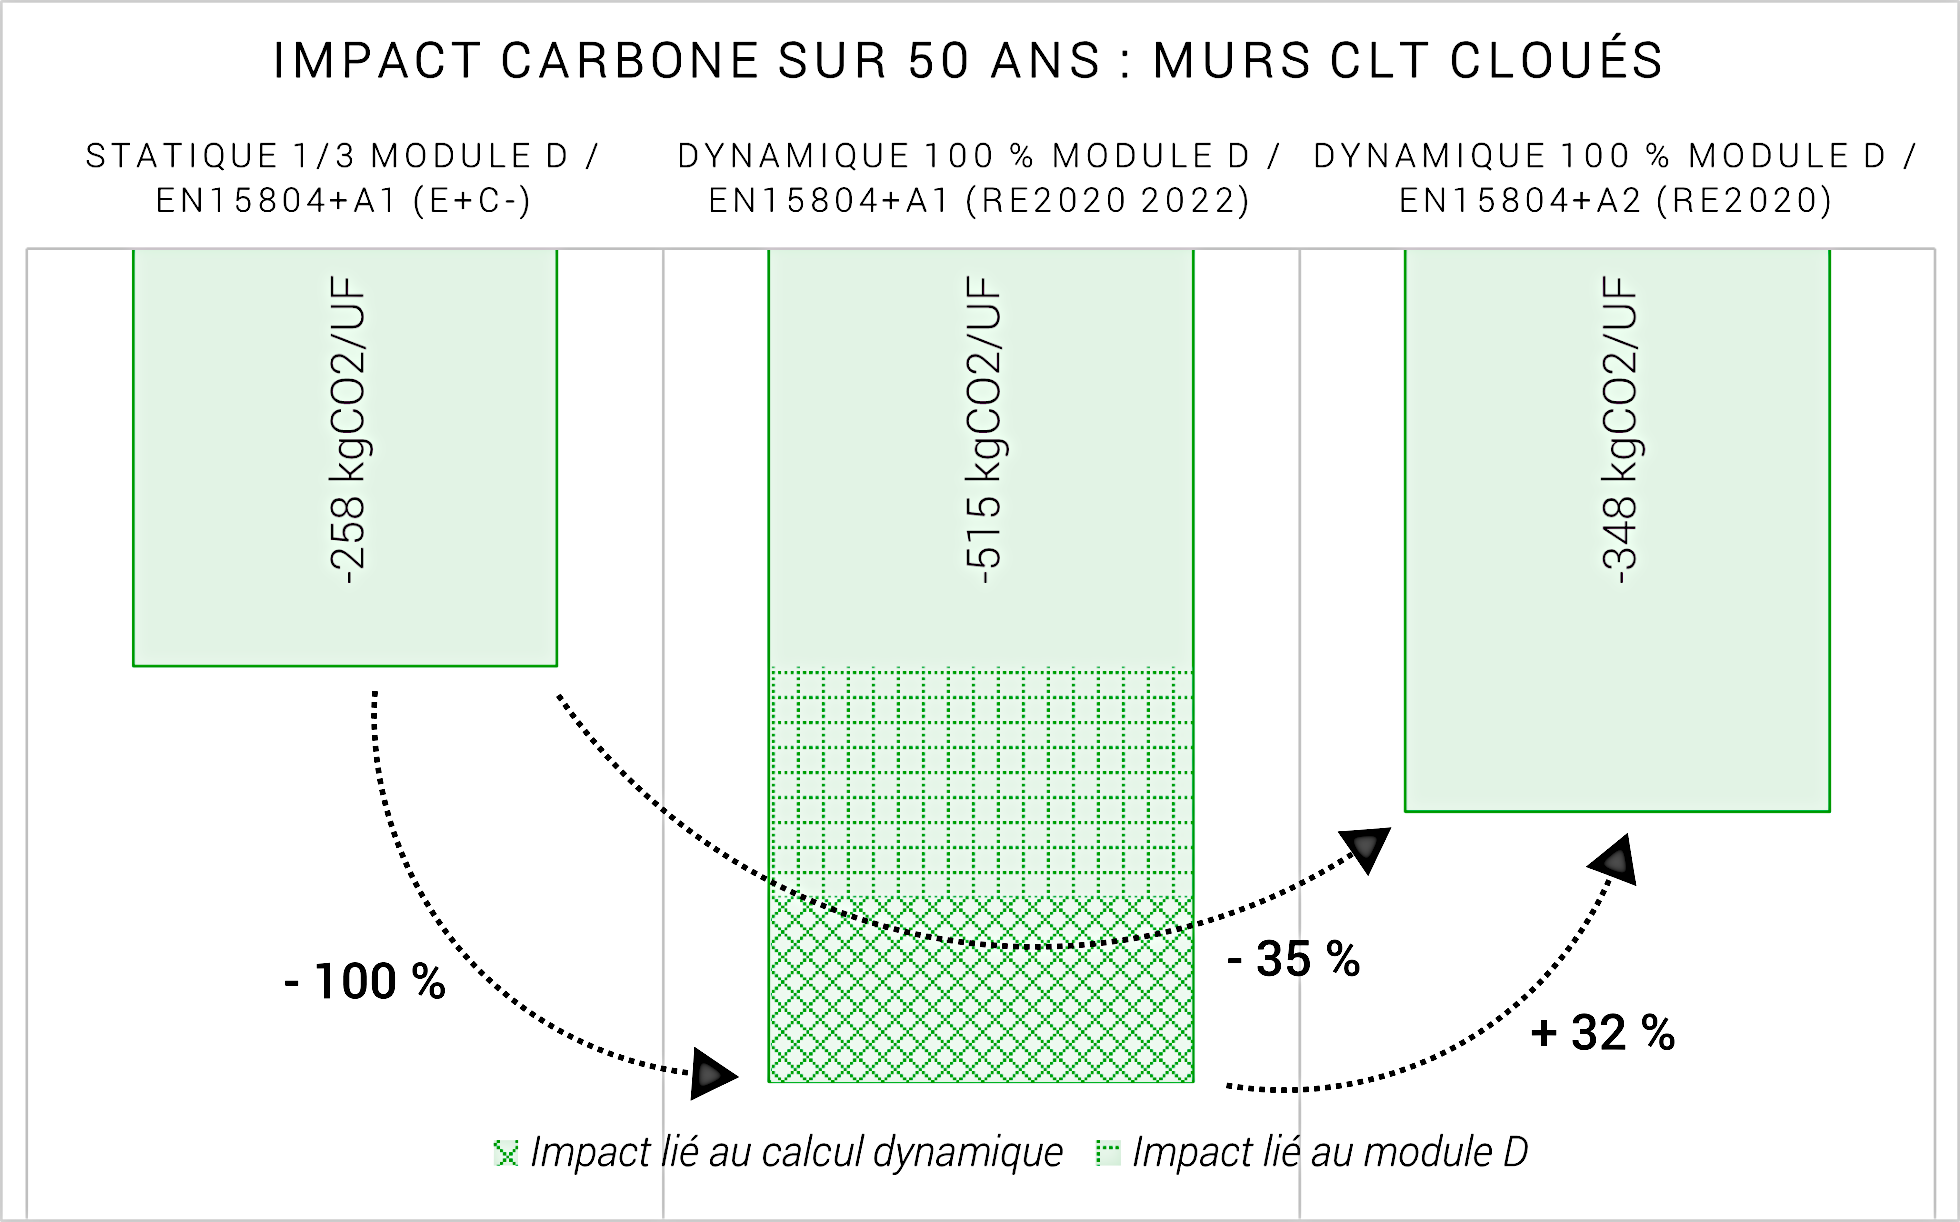 Les murs CLT pris comme exemple (99 % bois) présentent un bilan carbone négatif qui s’explique par :
<ul> <li>Le stockage du carbone lors de l’étape de fabrication (stockage = impact compté en -) 
<li> La production de chaleur et d’électricité lors de l’incinération d’une partie du produit déposé en fin de vie (module D négatif) 
<li> Des émissions  (comptées en +) liées à la fabrication (peu énergivore), une mise en œuvre générant peu de pertes et de déchets, une durée de vie de 100 ans sans entretien.</ul> <br/>Ce produit stocke beaucoup de carbone biogénique, d’où un impact très marqué du changement de norme.